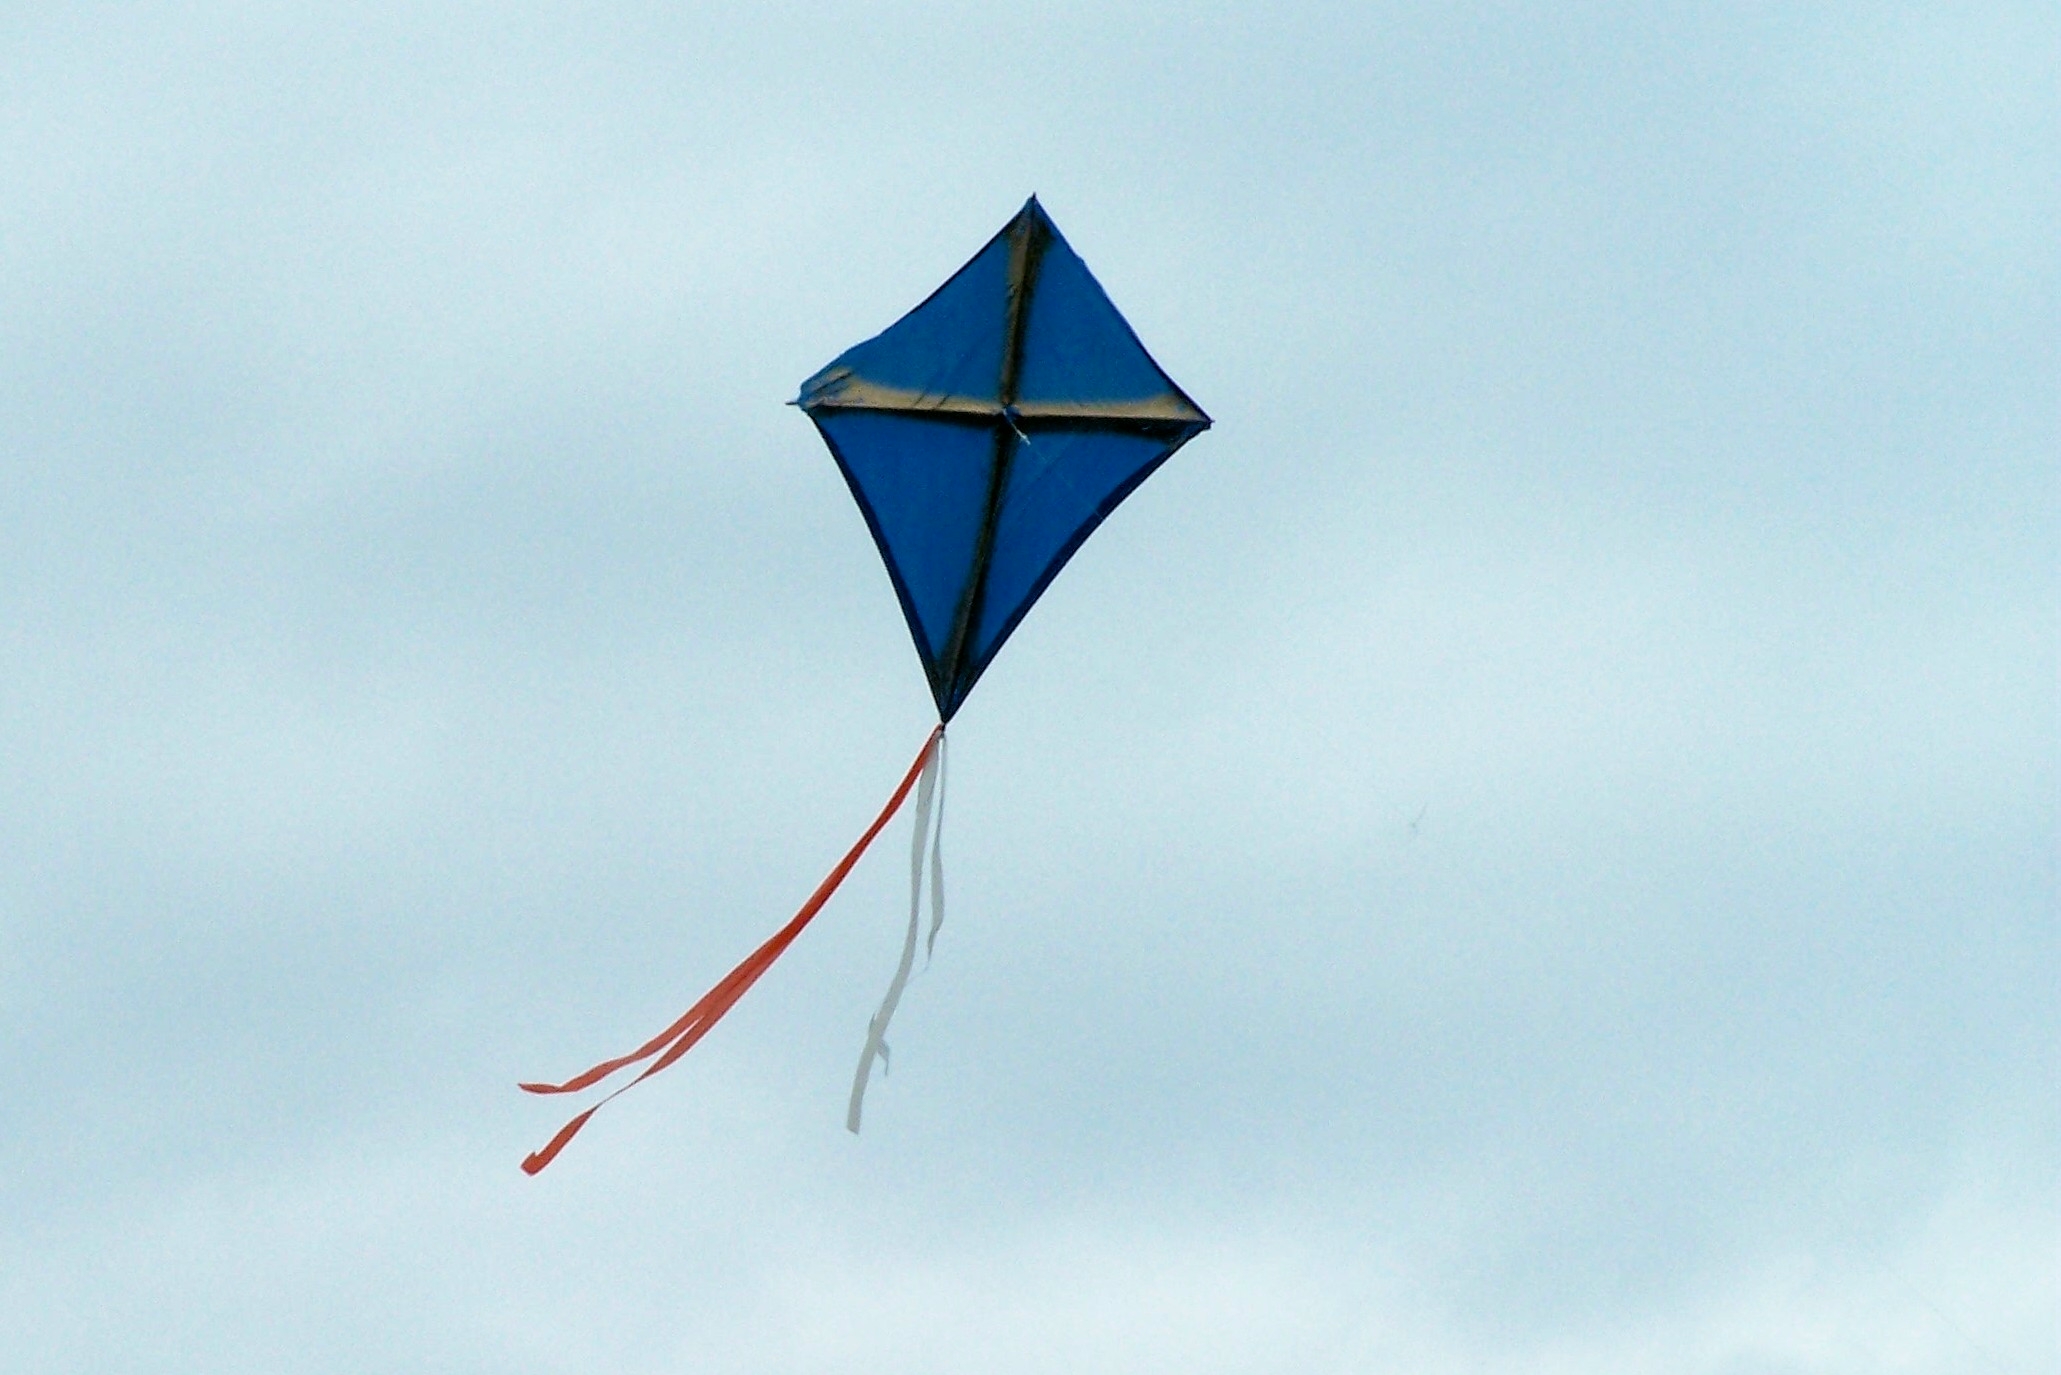 February - Blue Kite From The Kite Runner , HD Wallpaper & Backgrounds